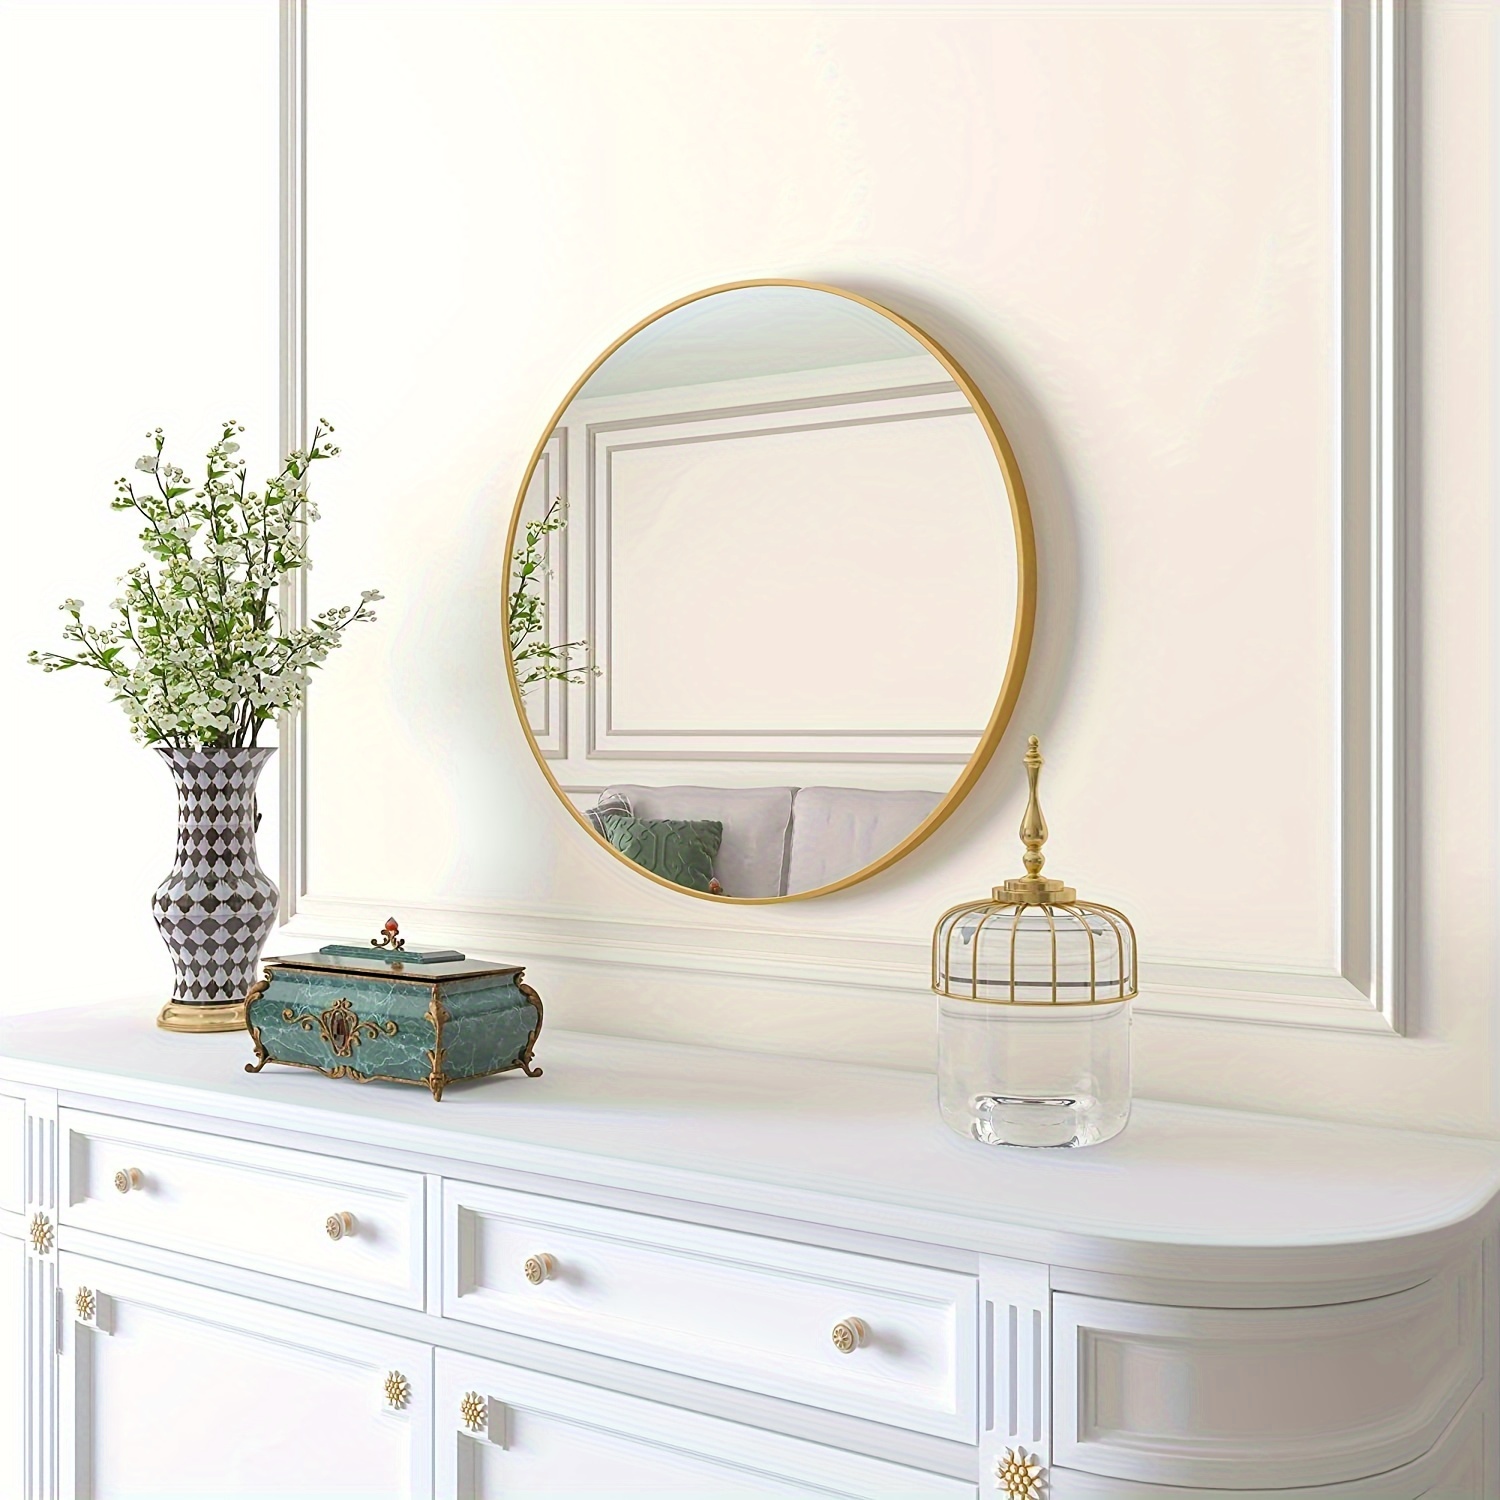 Espejo redondo dorado, espejo de pared redondo de 24 pulgadas, espejo de  baño redondo con marco de metal, espejo circular montado en la pared para